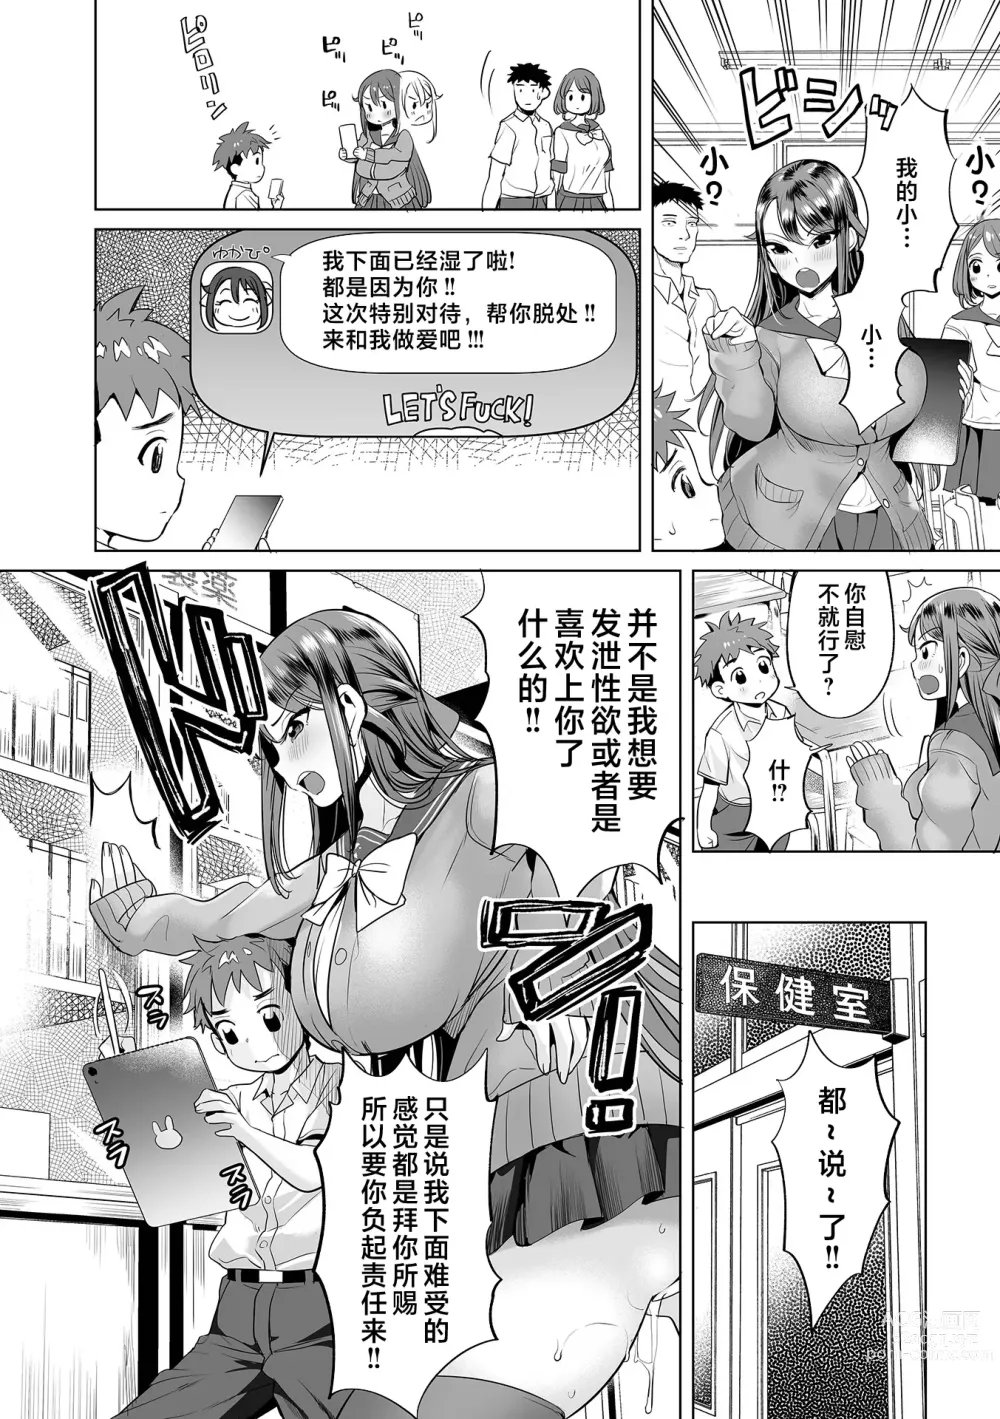 Page 5 of manga Mama Mi~ya#1--#4